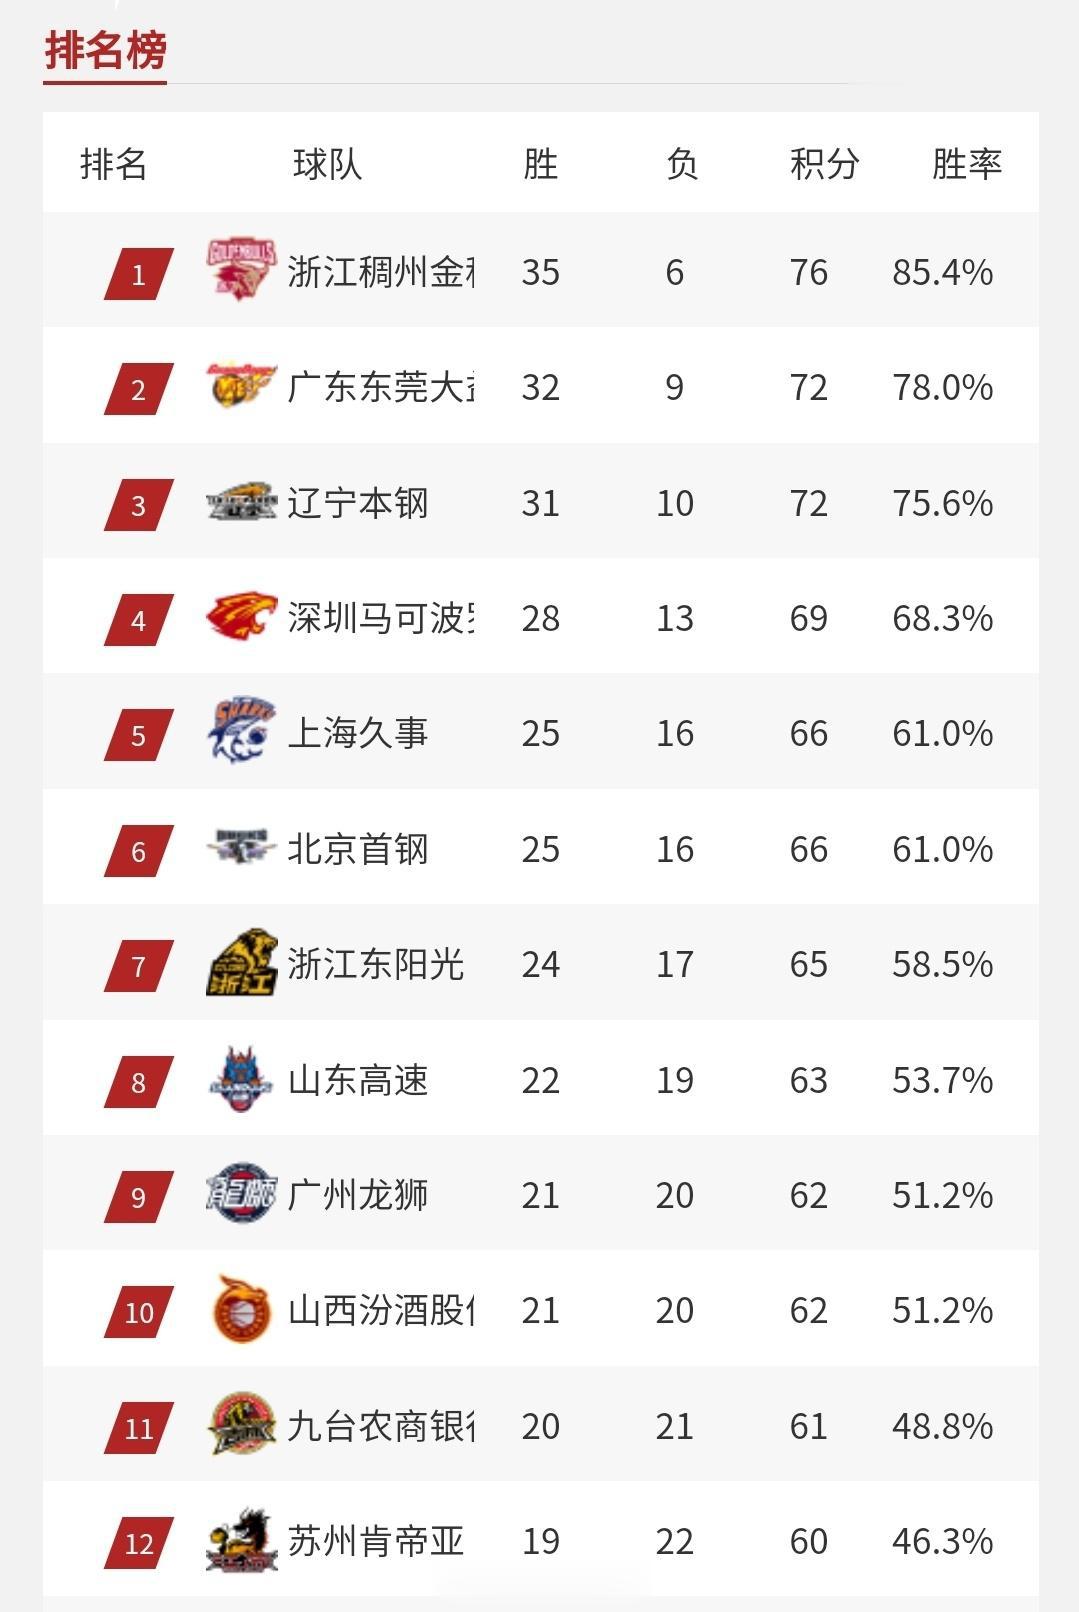 41轮结束后的季后赛区积分榜⬇️ #cba# 广东反超辽宁升至第二，广州一战升至(1)